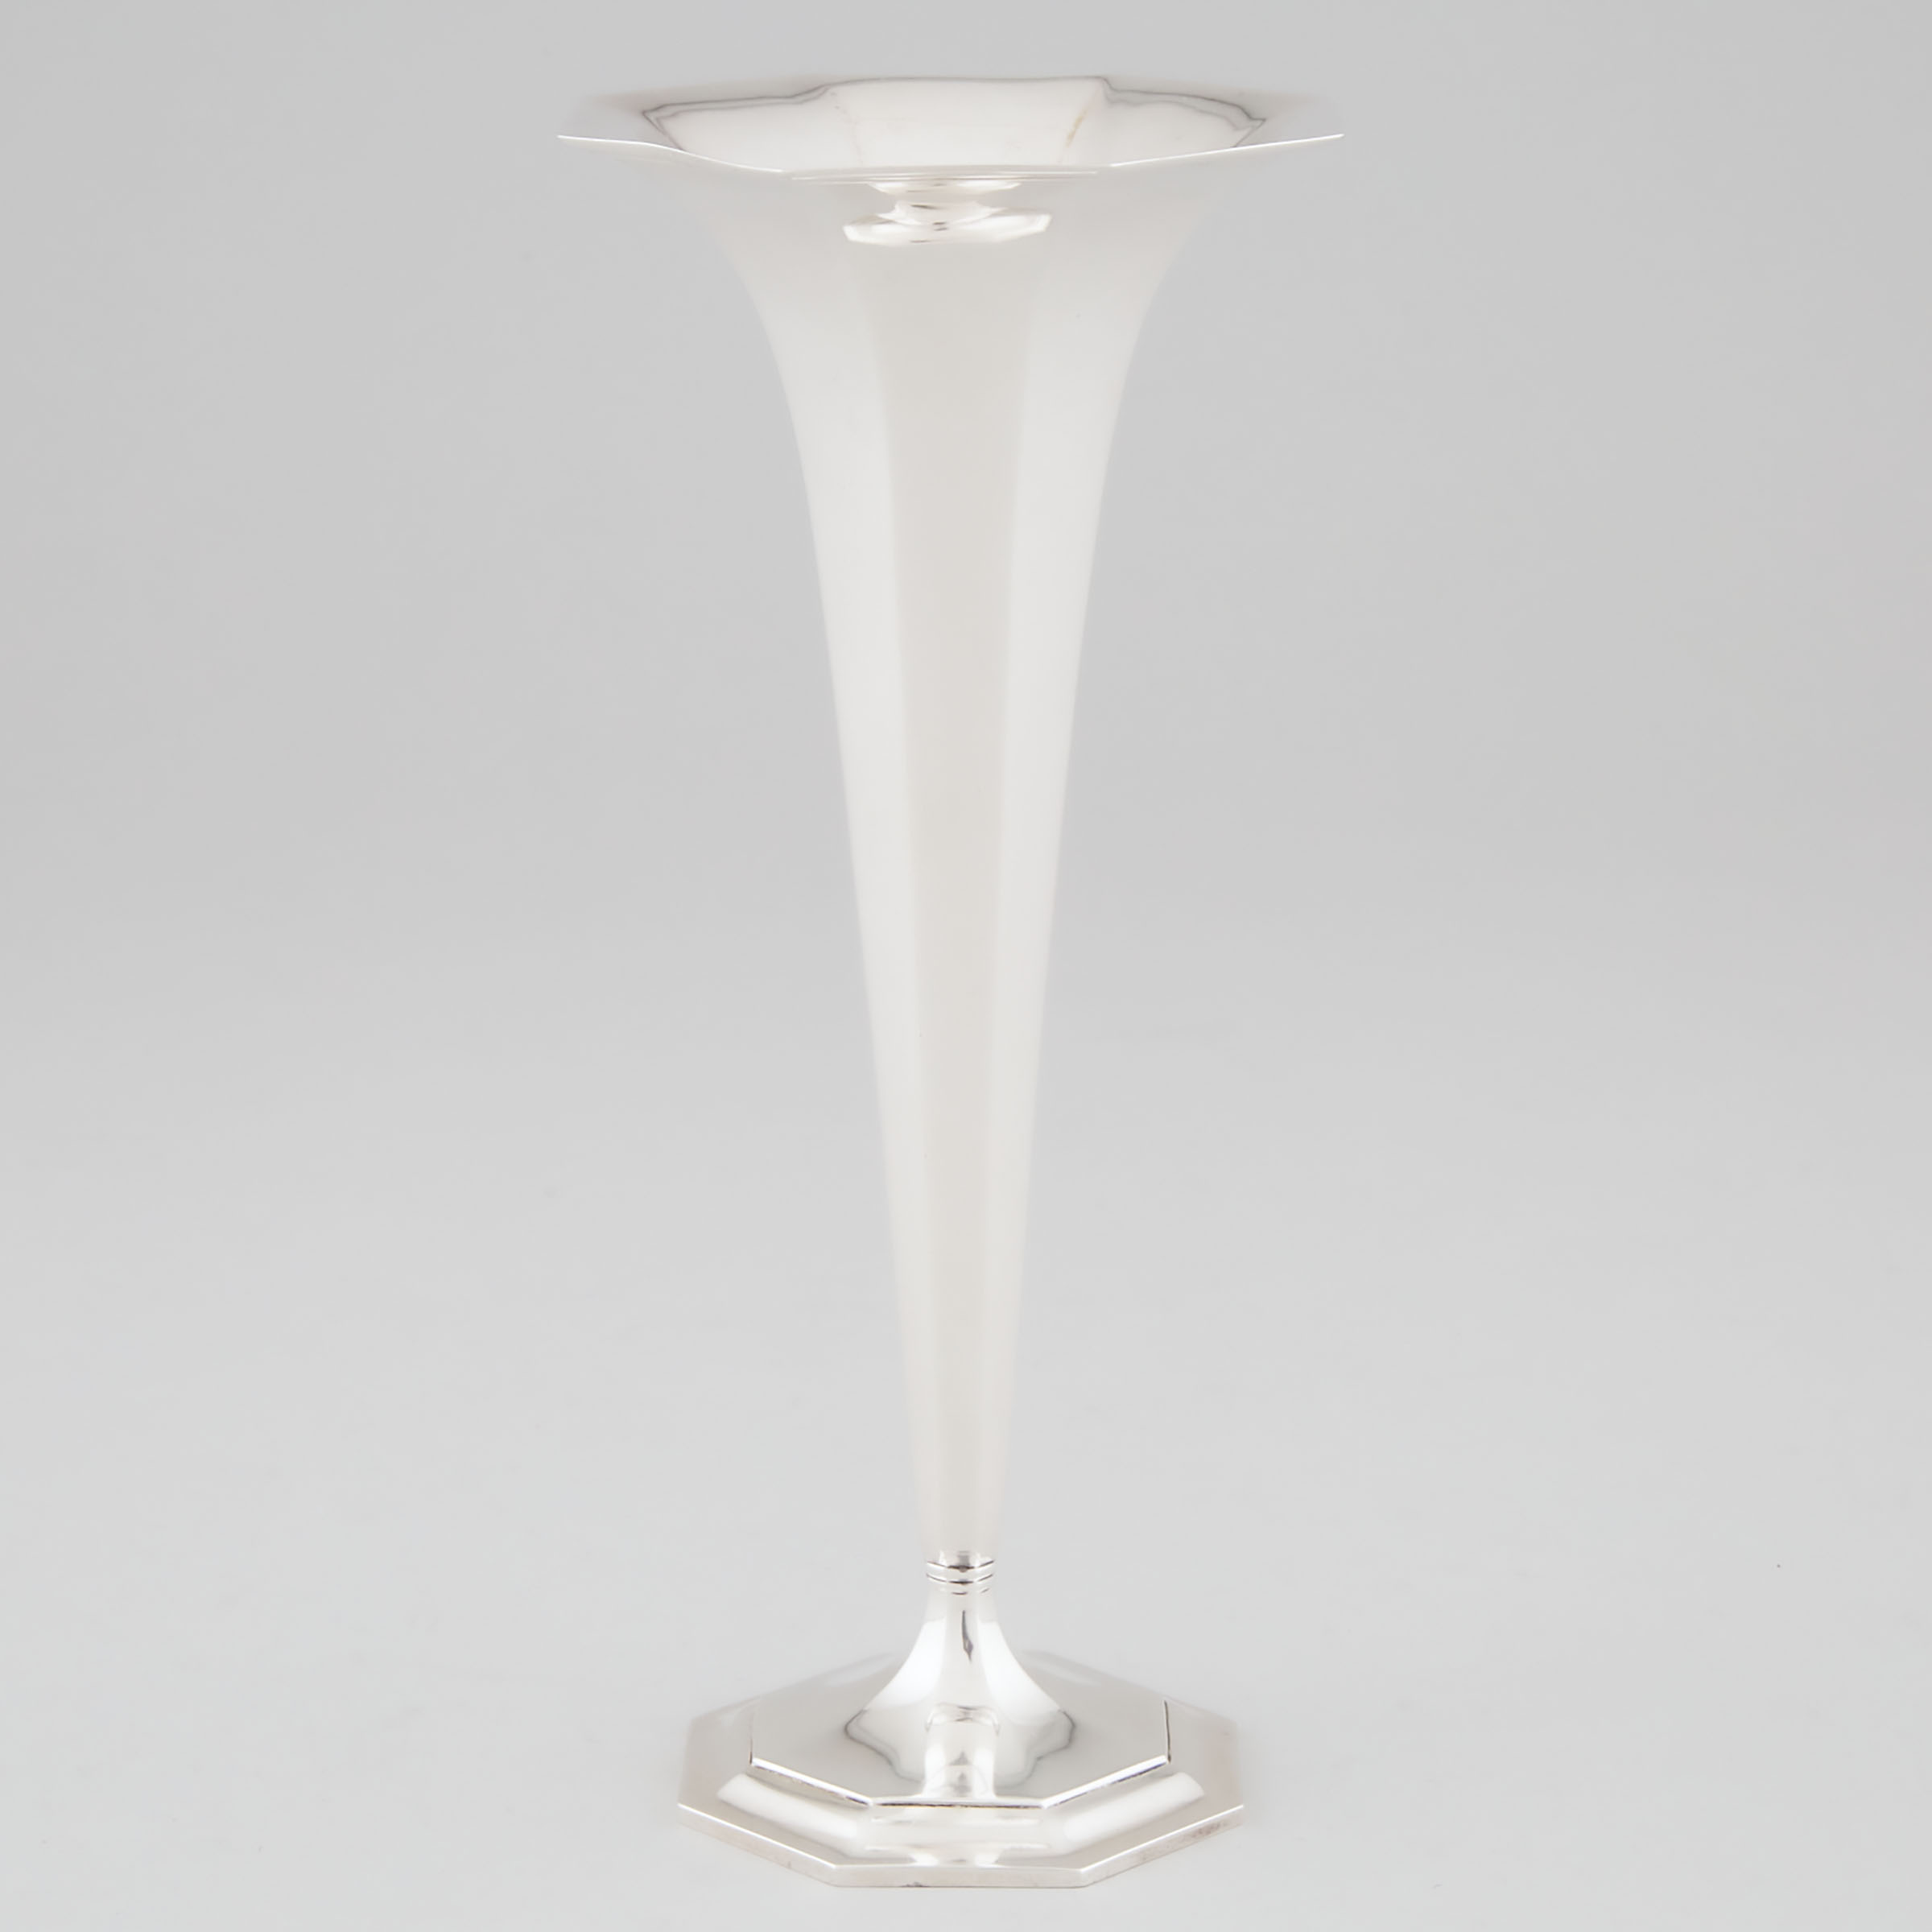 American Silver Octagonal Vase, Tiffany & Co., New York, N.Y., c.1907-38